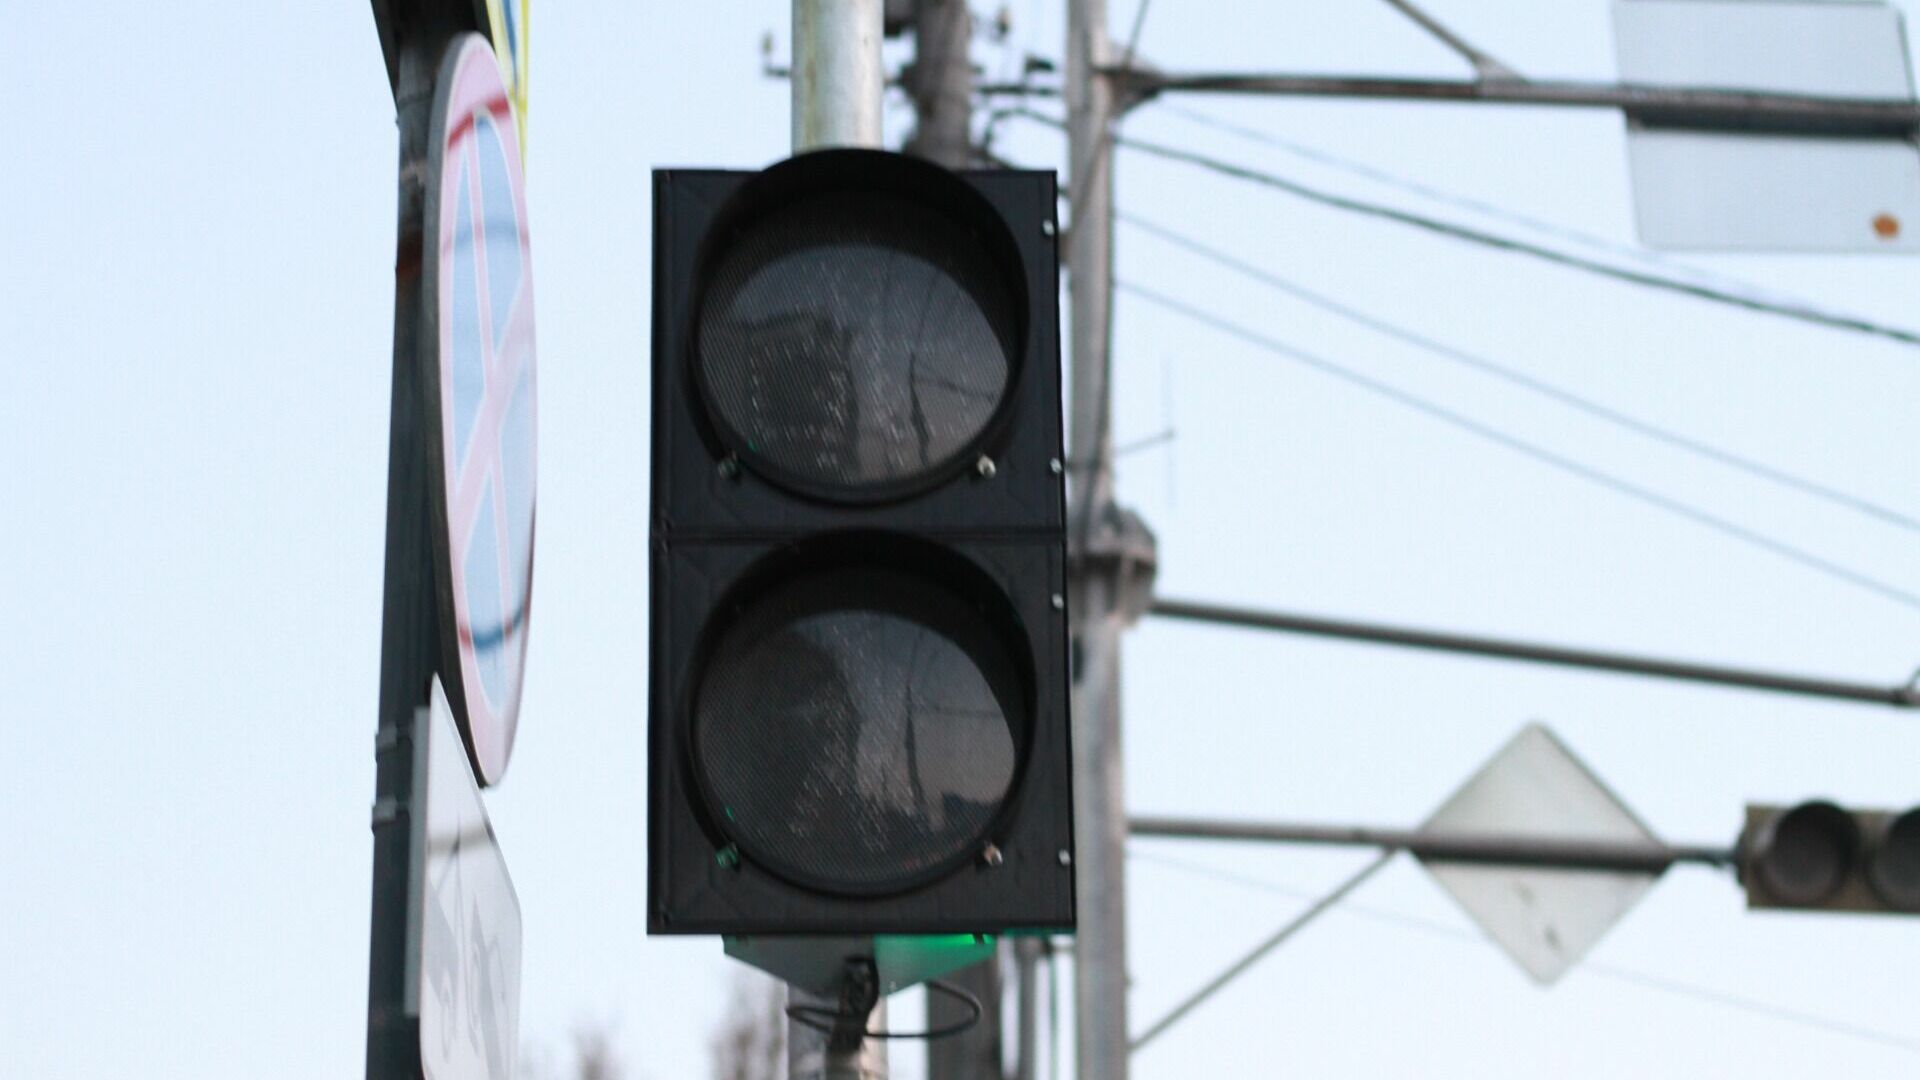 Светофоры отключат по улице Авторемонтной, Молодежной и Ленинградской в Тюмени 11 мая